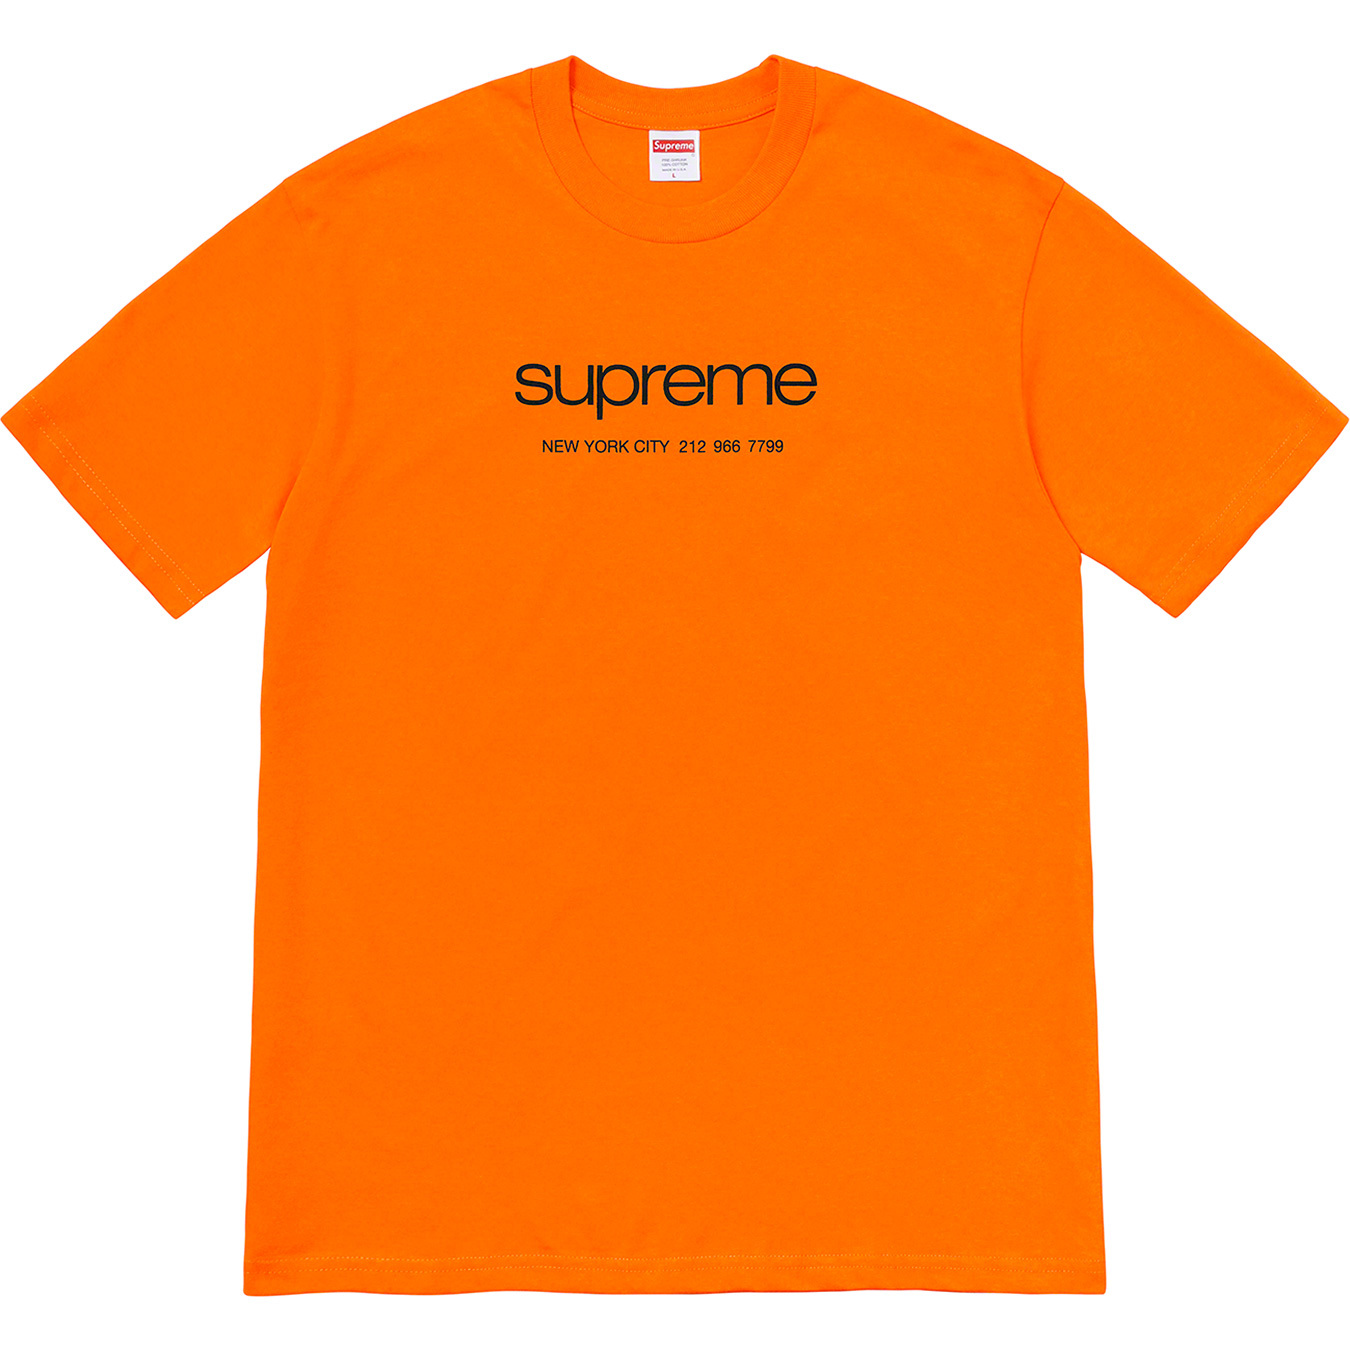 Shop Tee - spring summer 2020 - Supreme